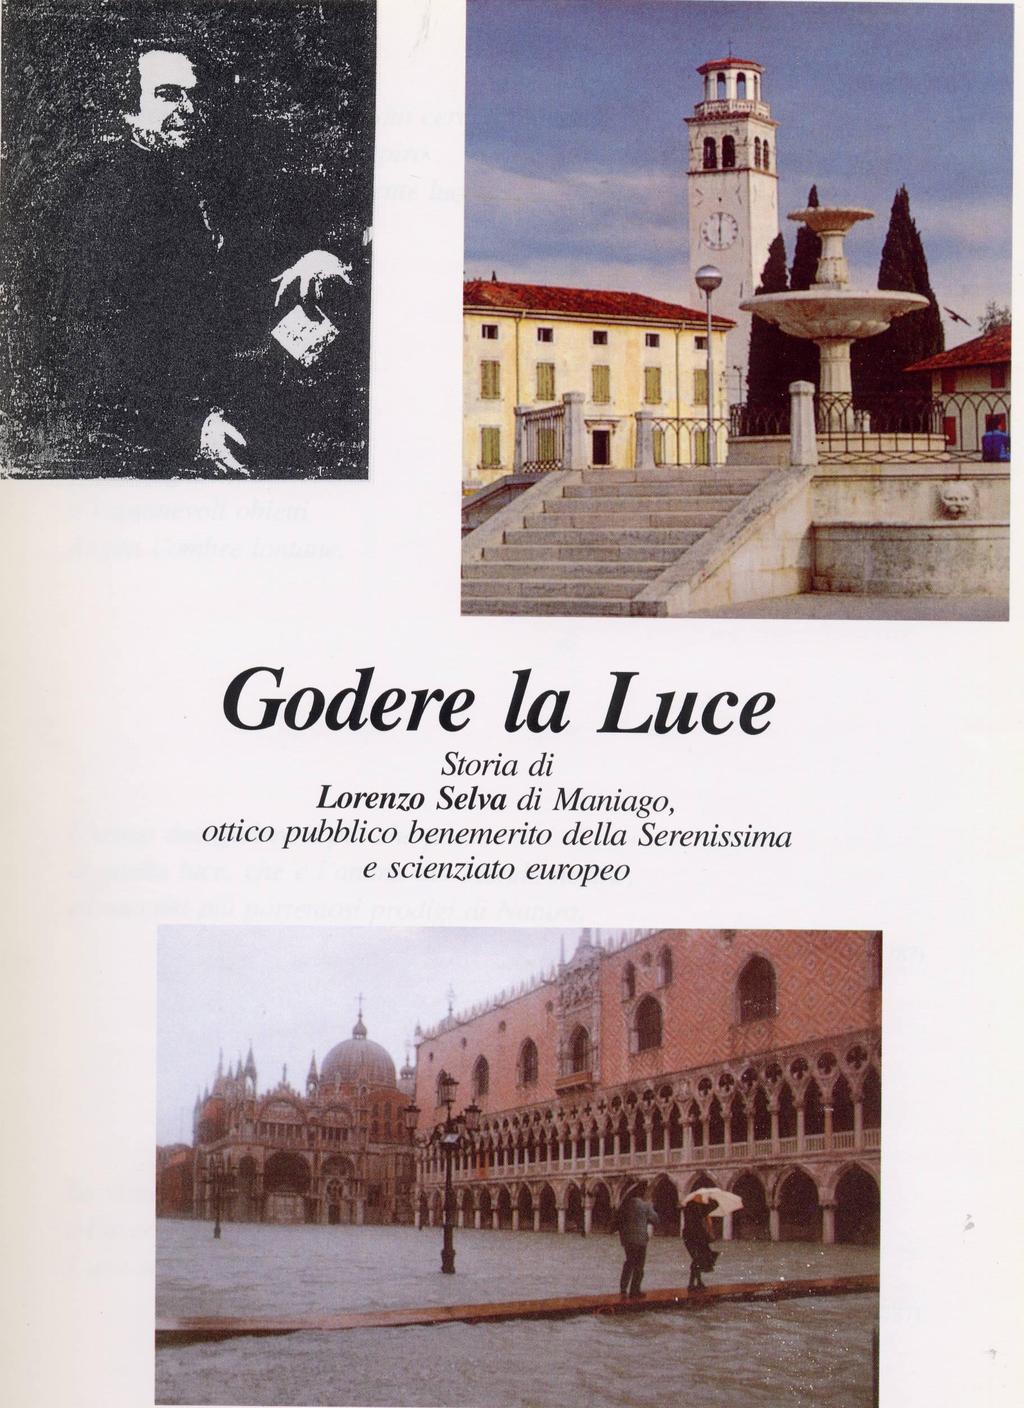 Nel gennaio del 1995 il Comune di Maniago sponsorizzava il testo «Godere la Luce» scritto dal dott.